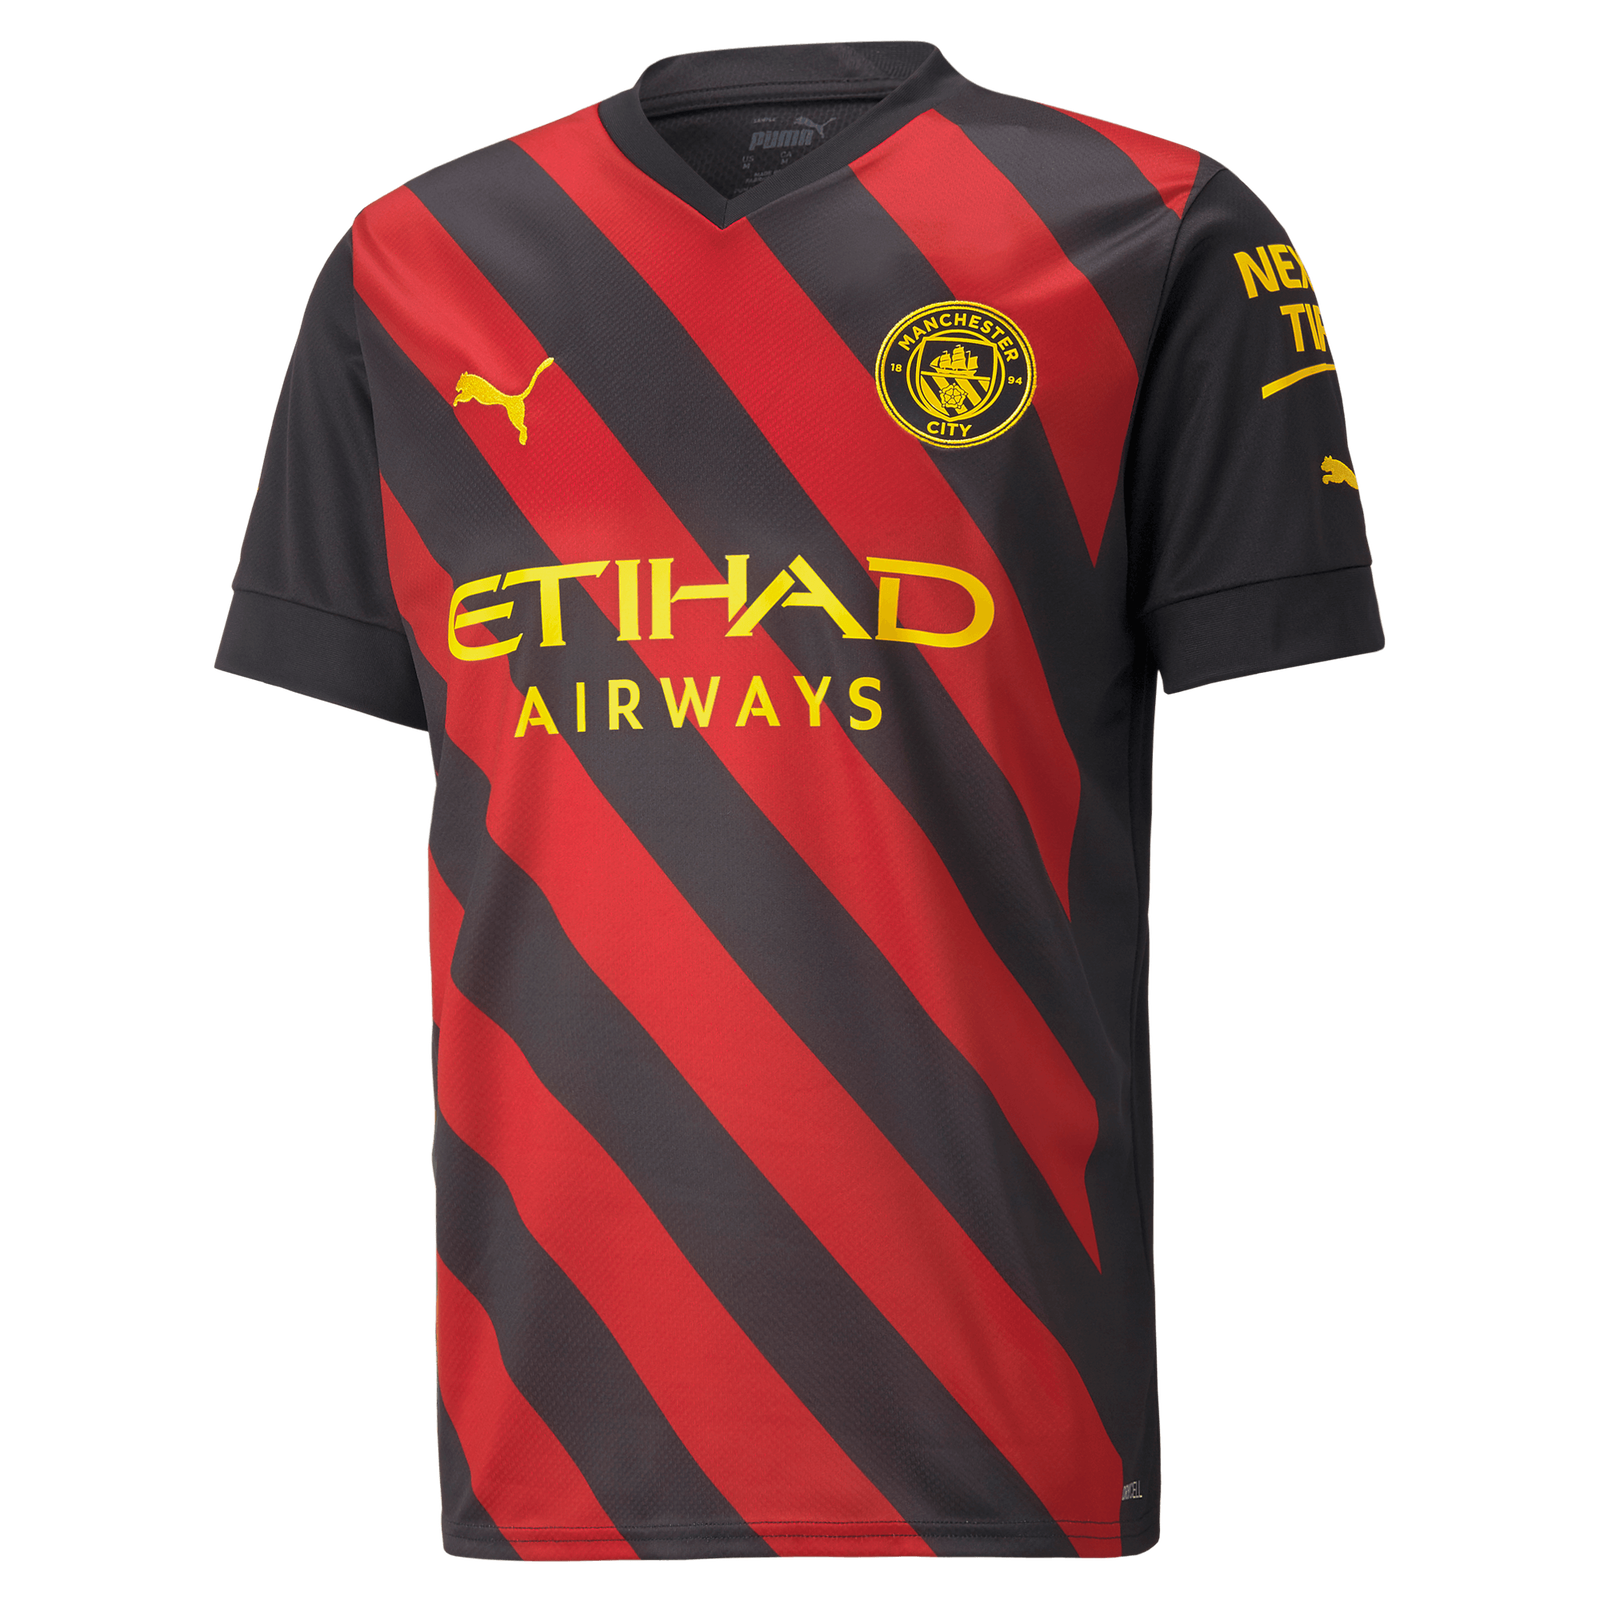 Camiseta Manchester City FtblNrgy con estampado completo